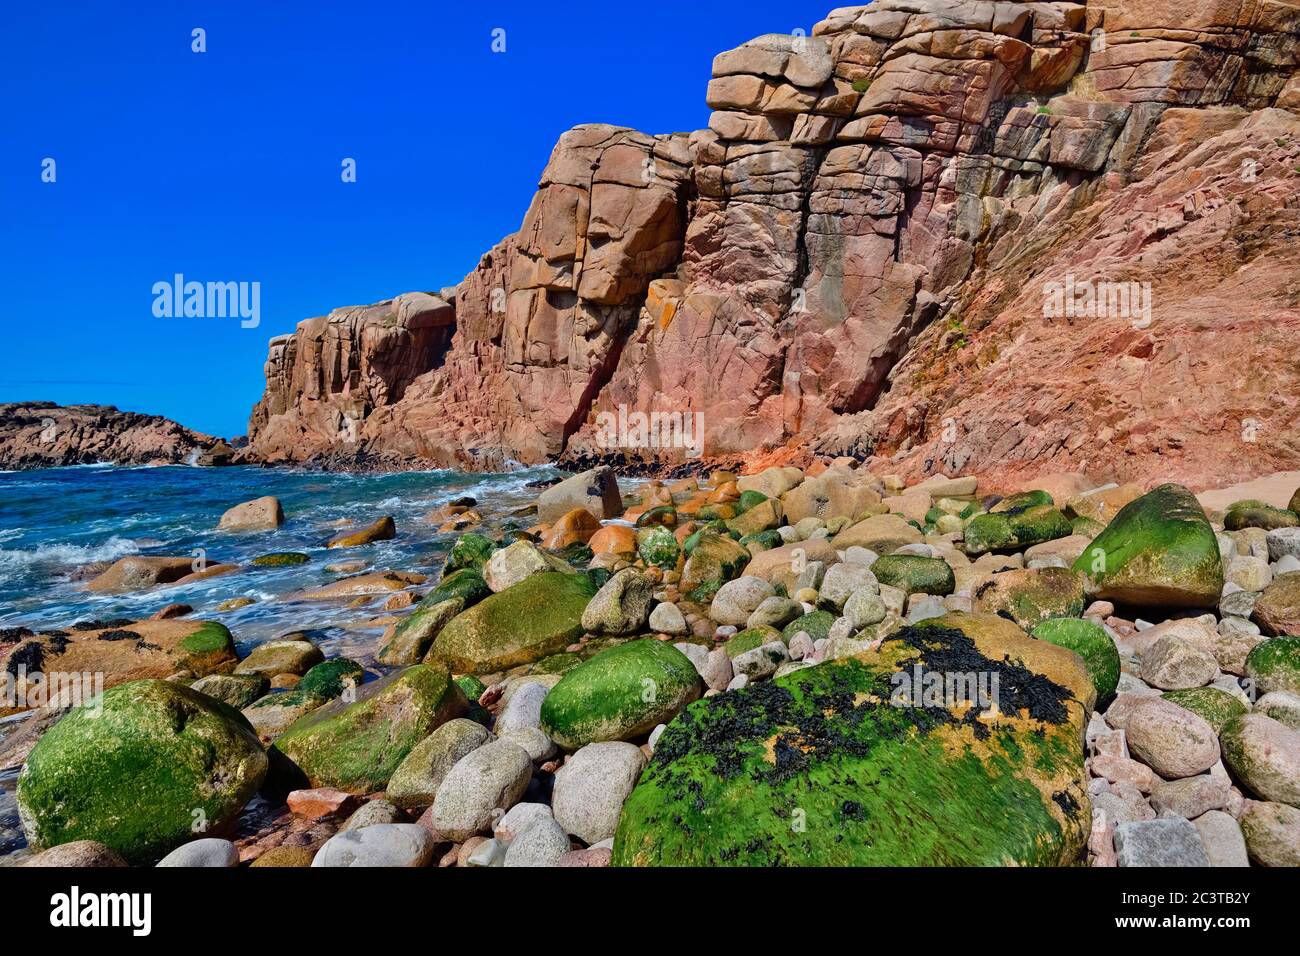 Irlanda, Contea di Donegal, Cruit Island, costa rocciosa con scogliere rosse e mare. Foto Stock